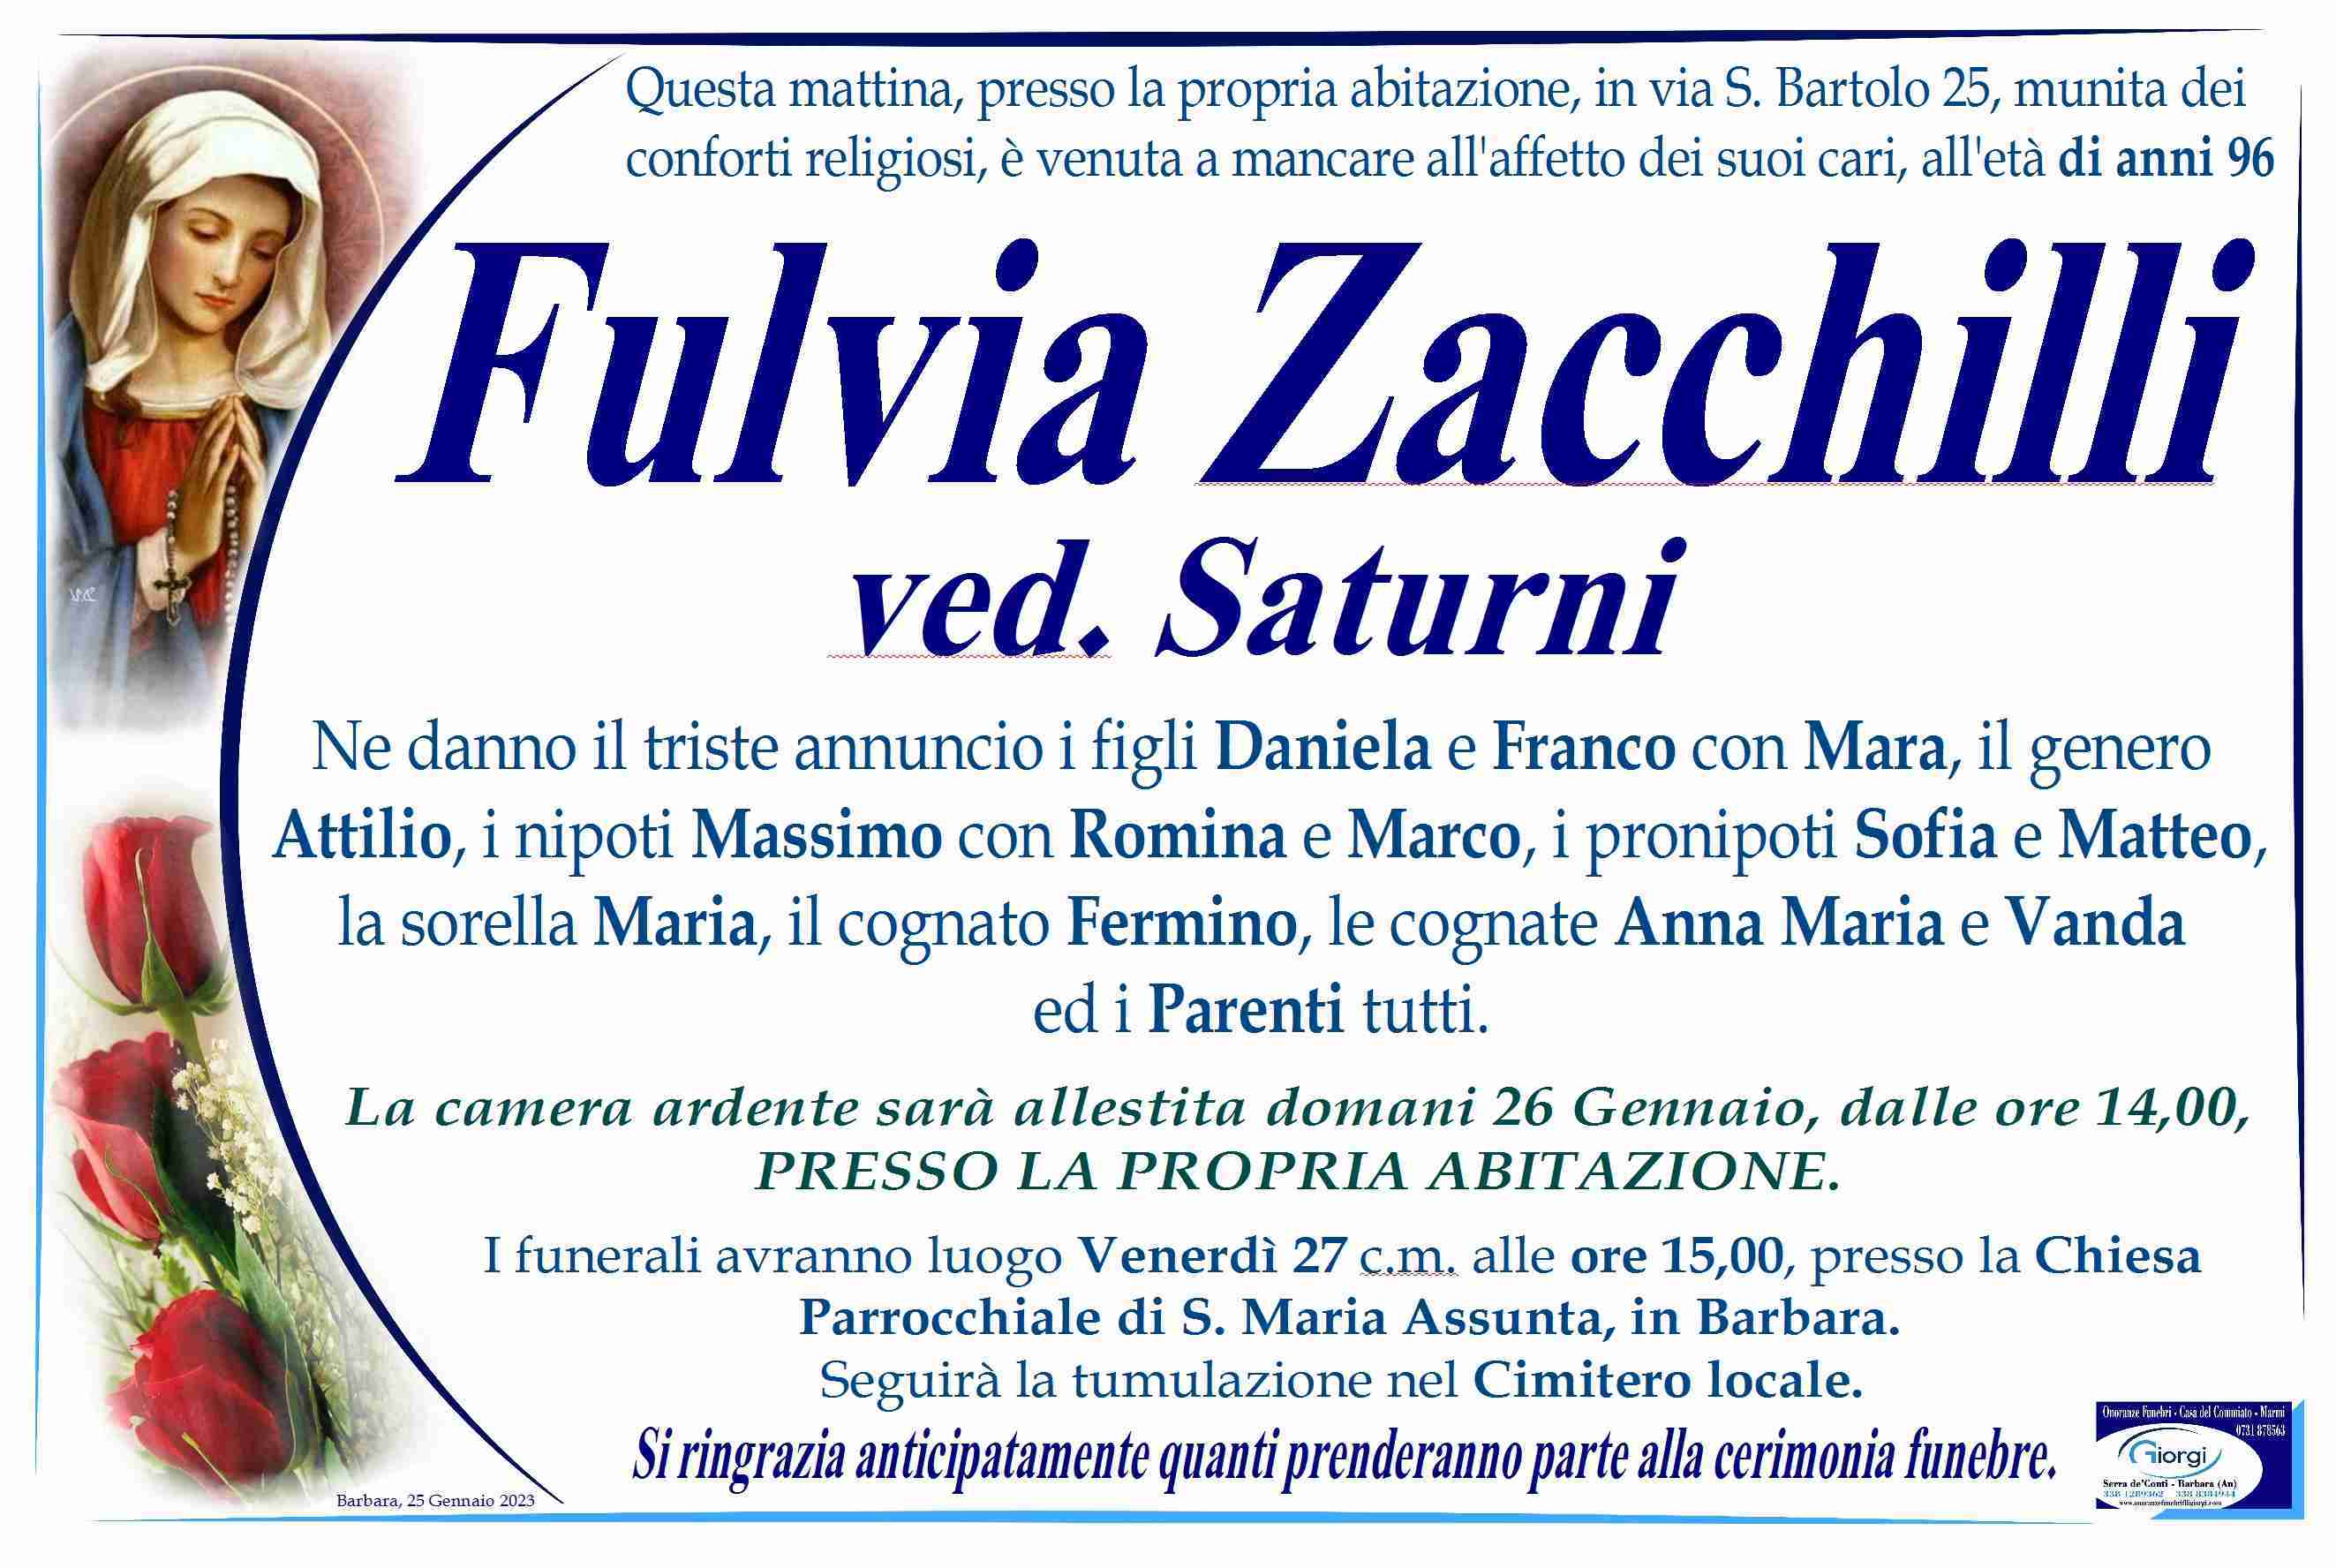 Fulvia Zacchilli